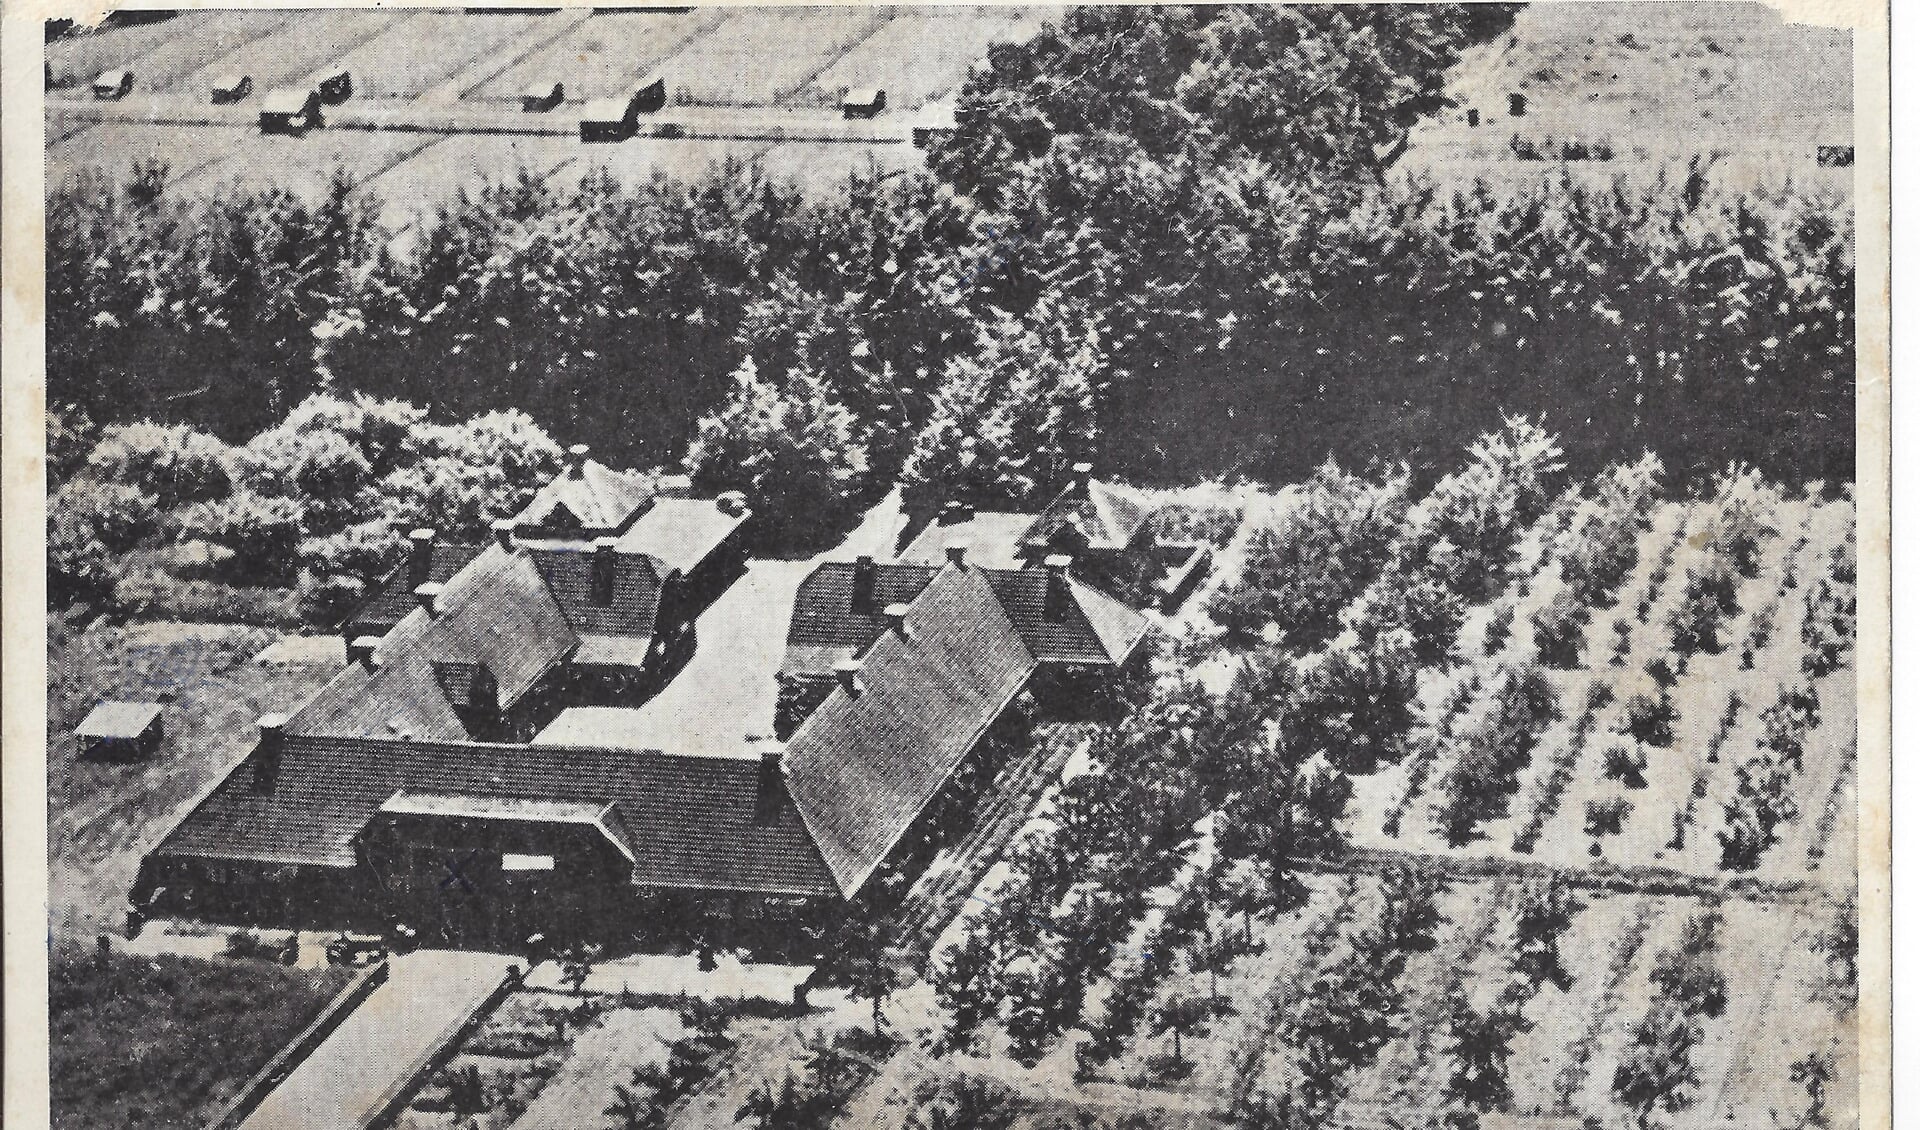 De modelboerderij De Harscamp, gebouwd door het echtpaar Kröller-Müller, speelt een hoofdrol in één van de negen afleveringen van de podcastserie Oorlog op de Veluwe.